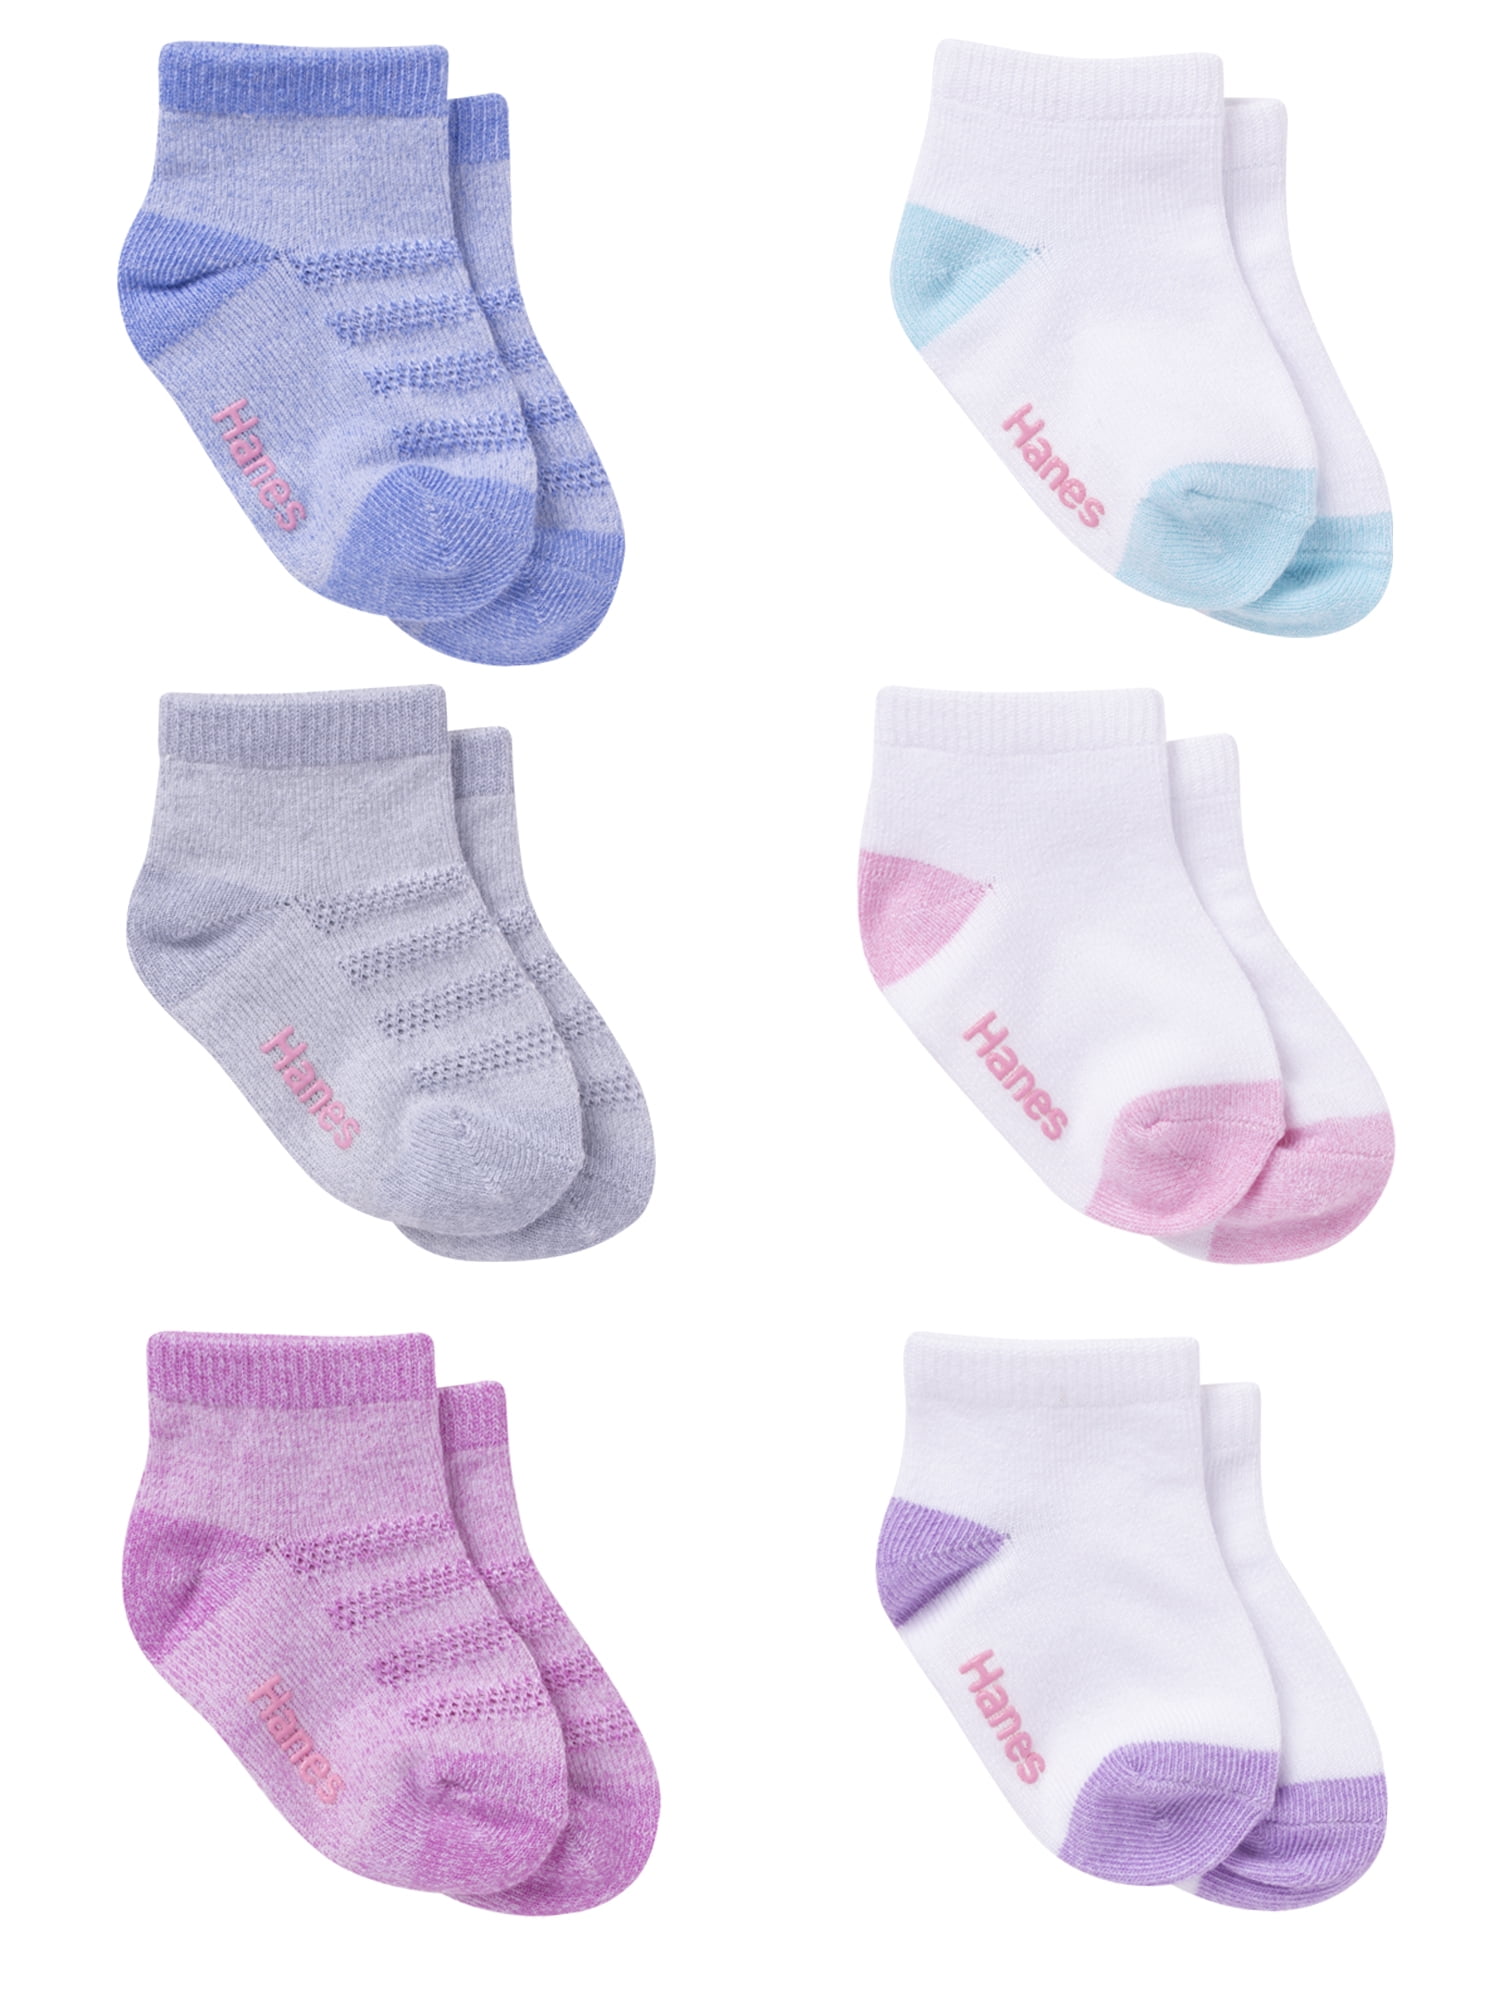 Hanes Toddler Girl Ankle Socks, 6 Pack, Sizes 6M-5T